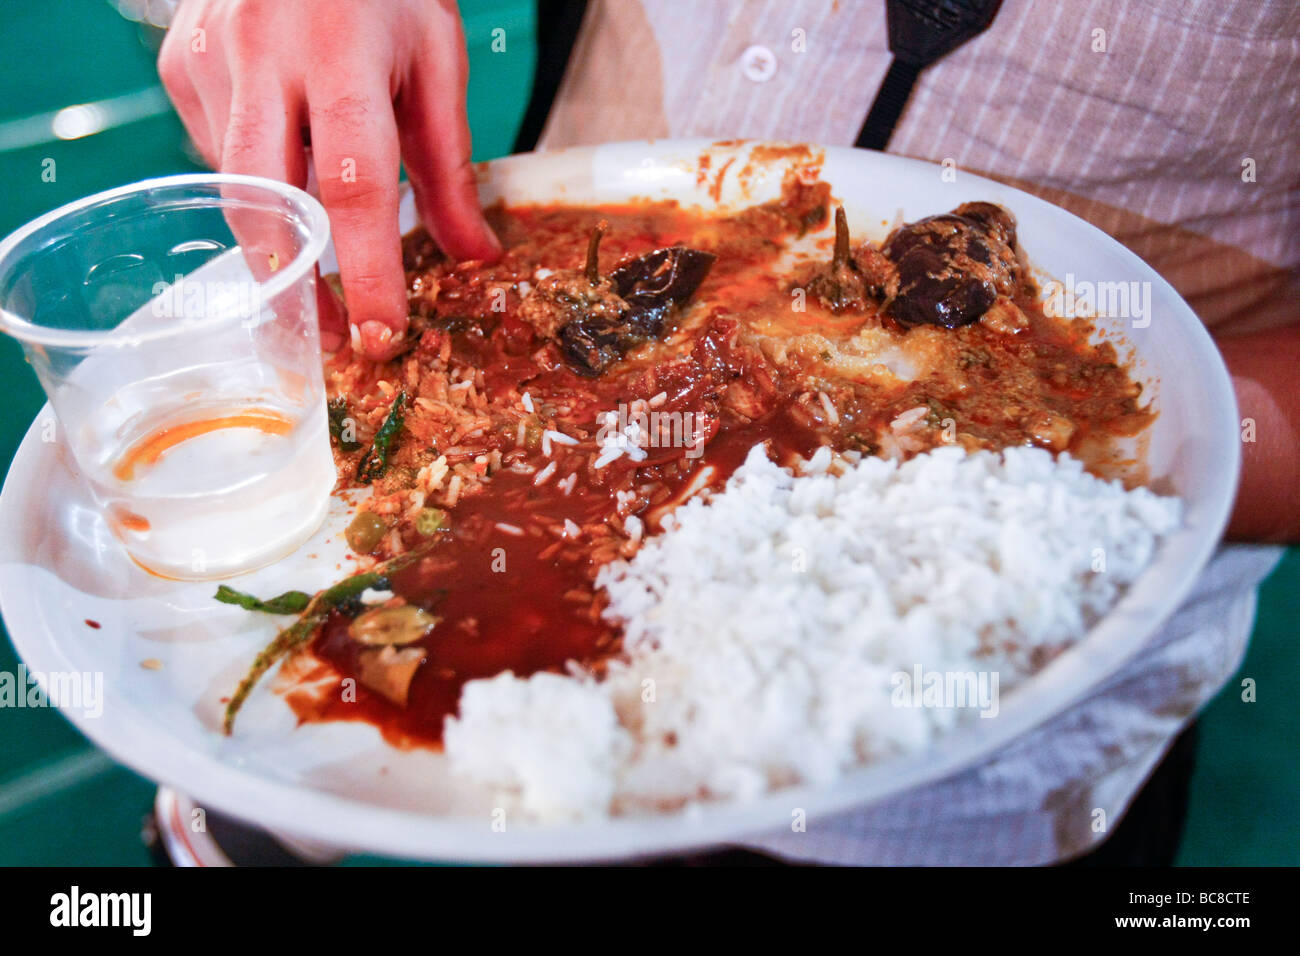 Ein Westler isst ein indisches Essen direkt mit seinen Händen in die traditionelle südindische Art. Stockfoto